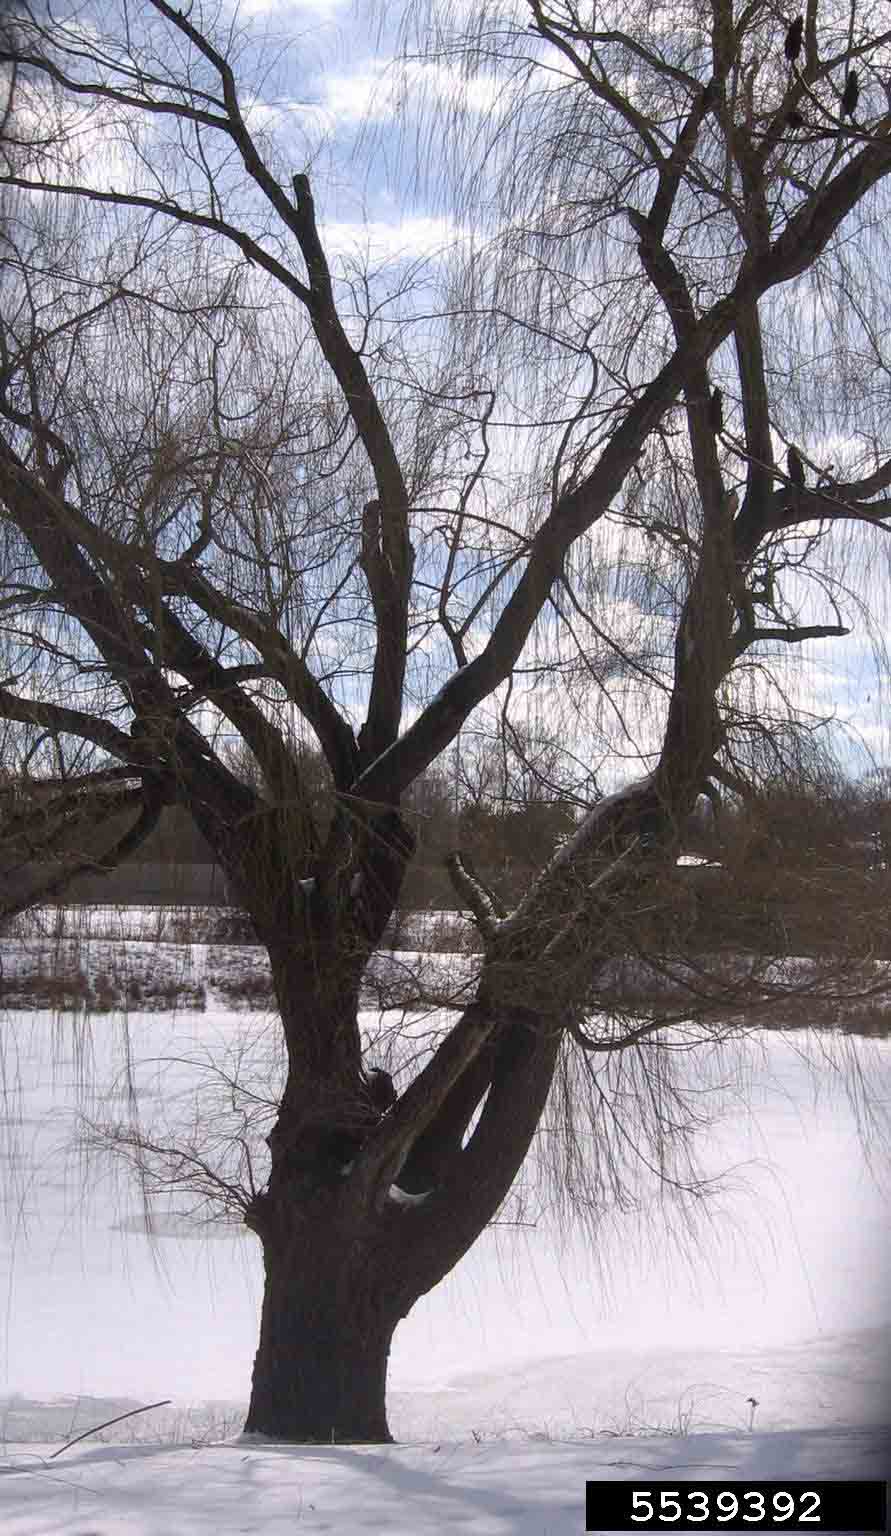 Weeping willow tree habit in winter